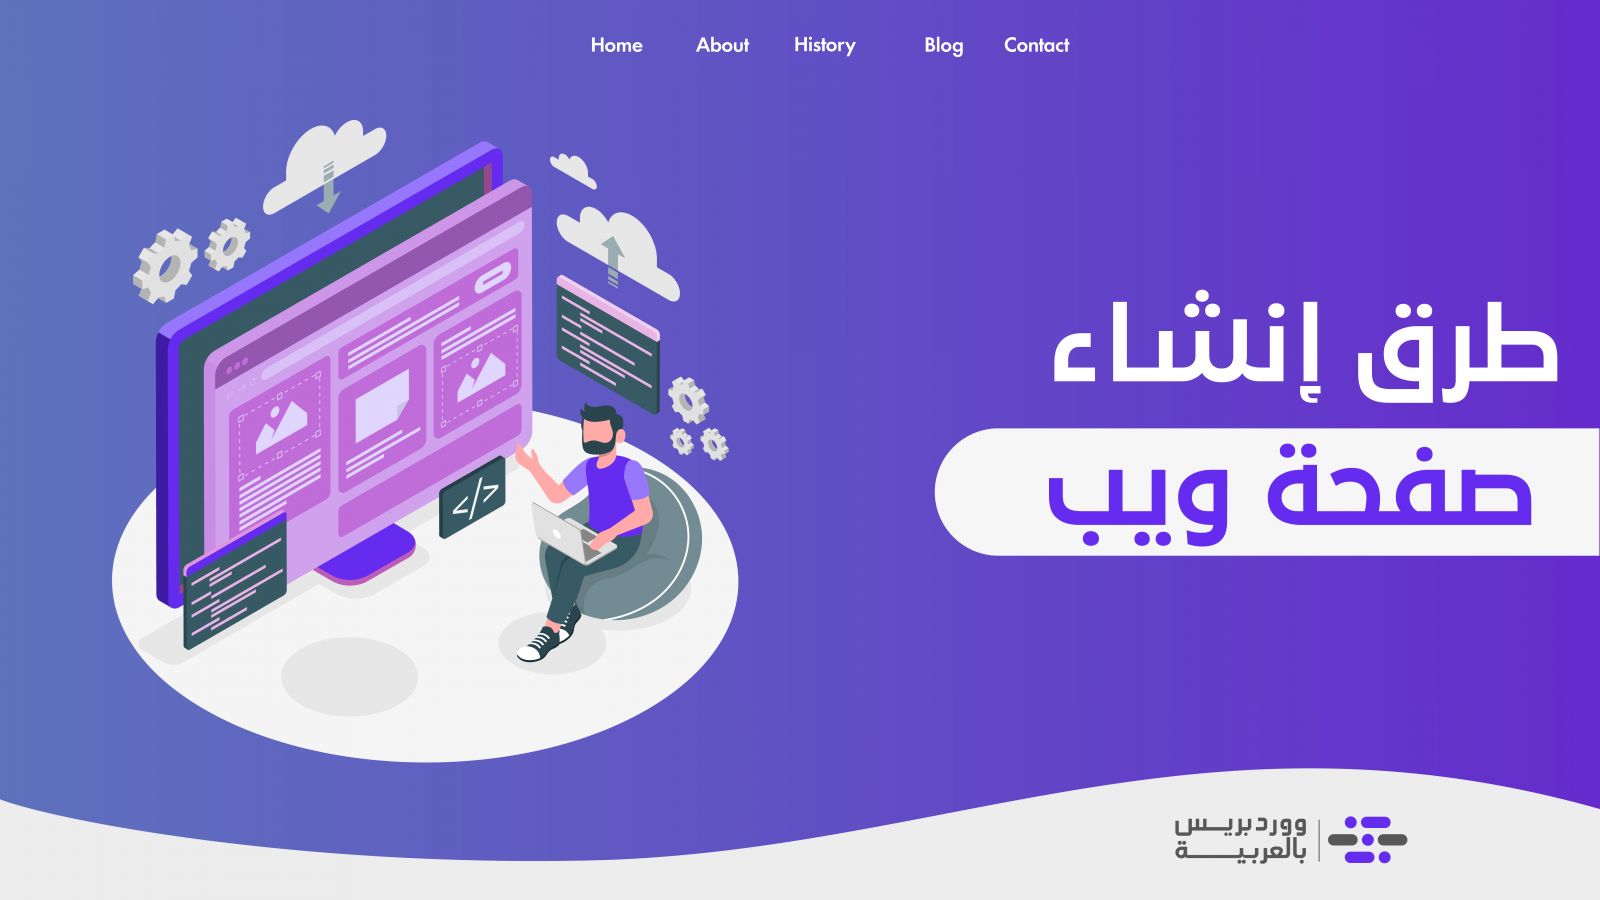 اكتشف كيفية إنشاء صفحة ويب مع نماذج عملية ووردبريس بالعربية